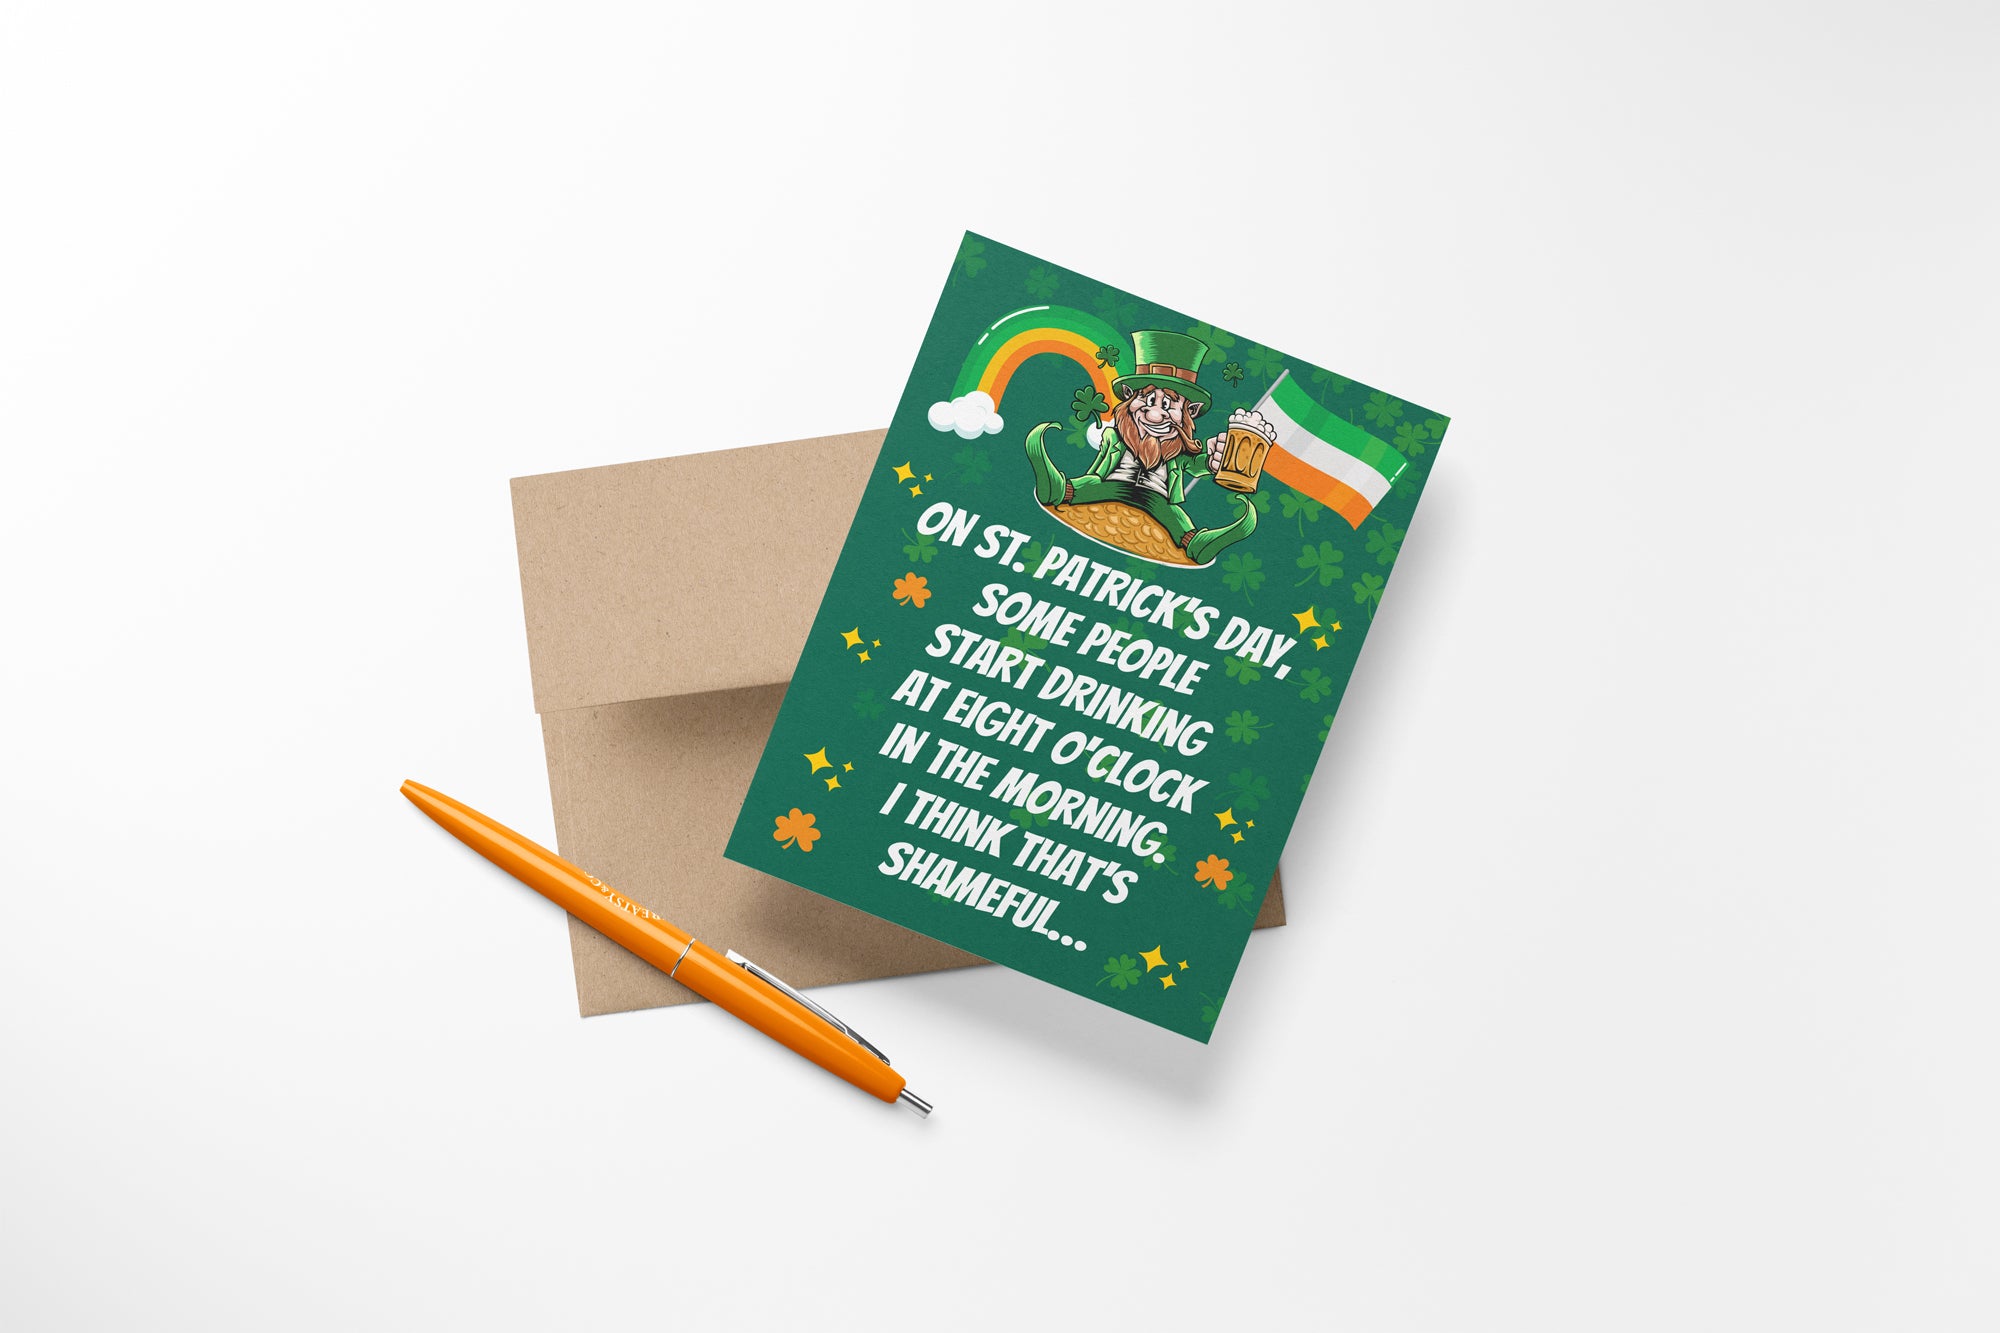 Grappige St Patrick's Day Card - beschamend